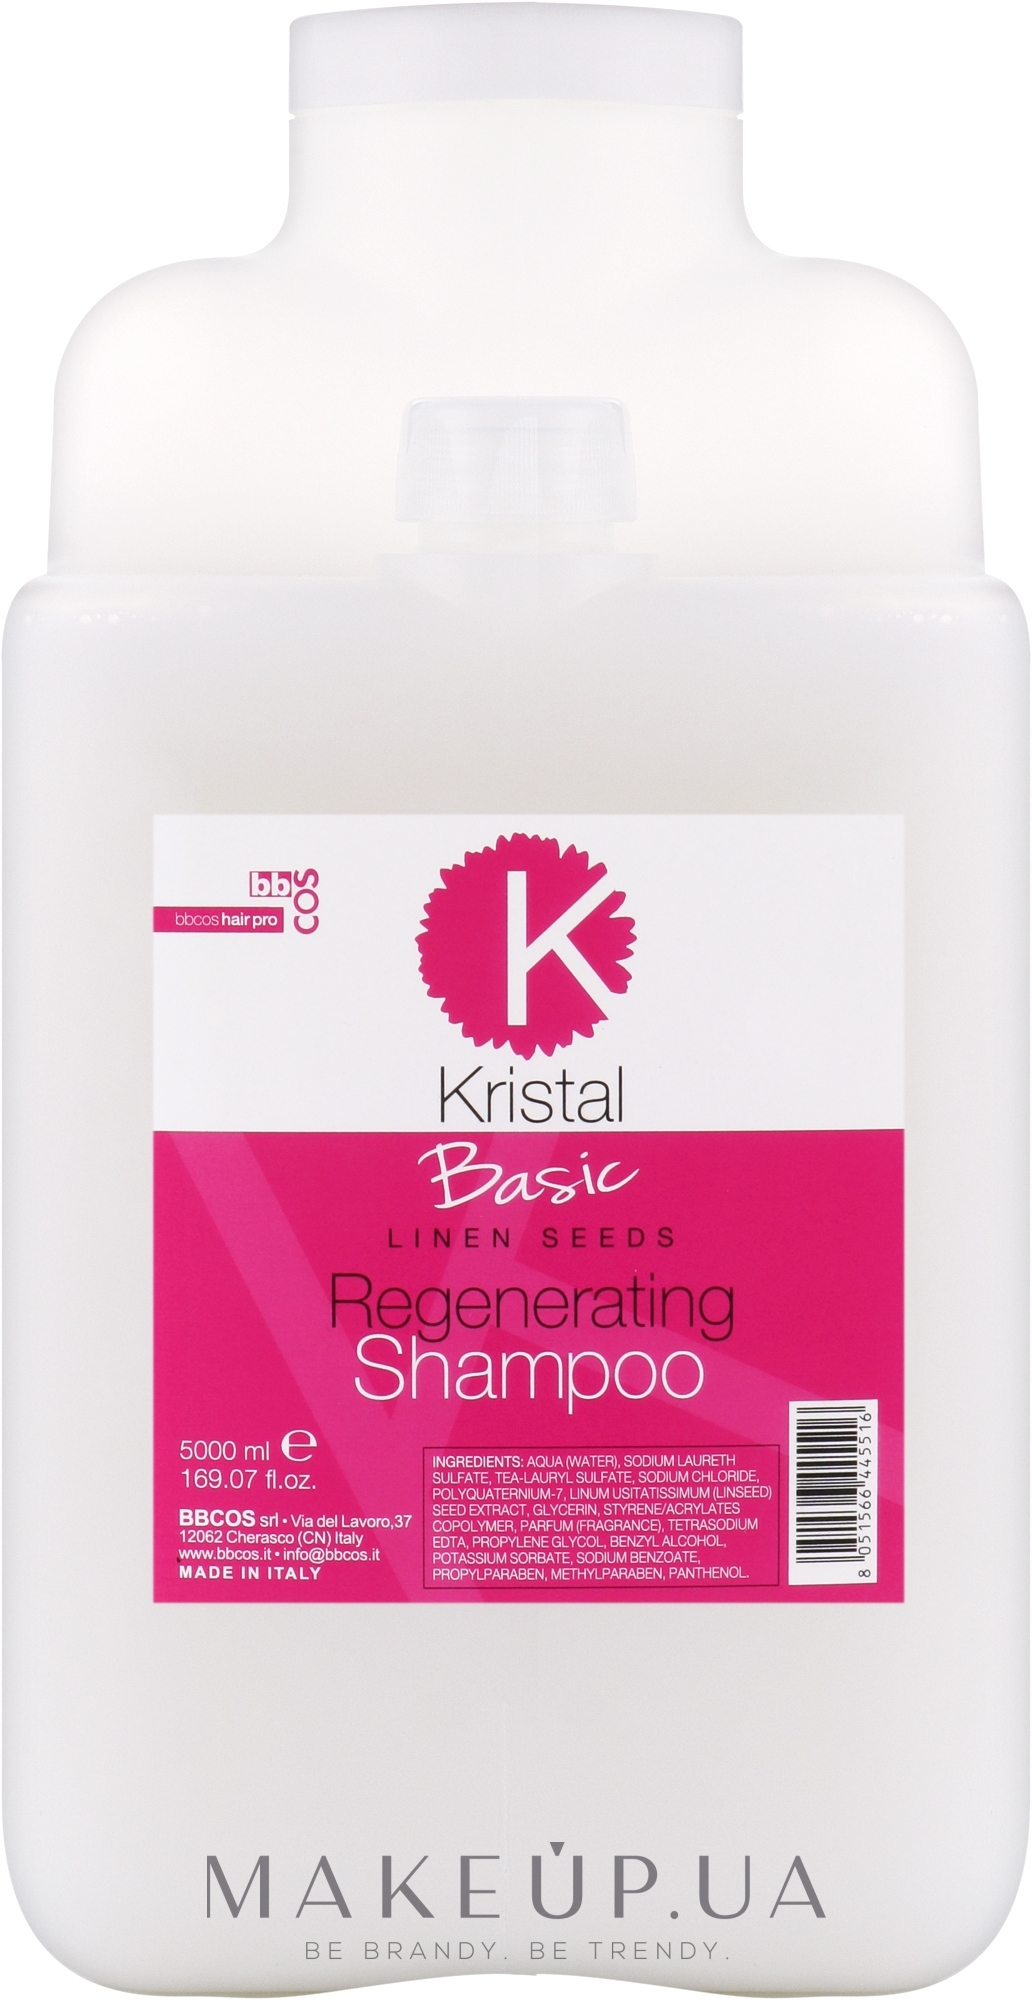 Шампунь регенерувальний для волосся - BBcos Kristal Basic Linen Seeds Regenerating Shampoo — фото 5000ml